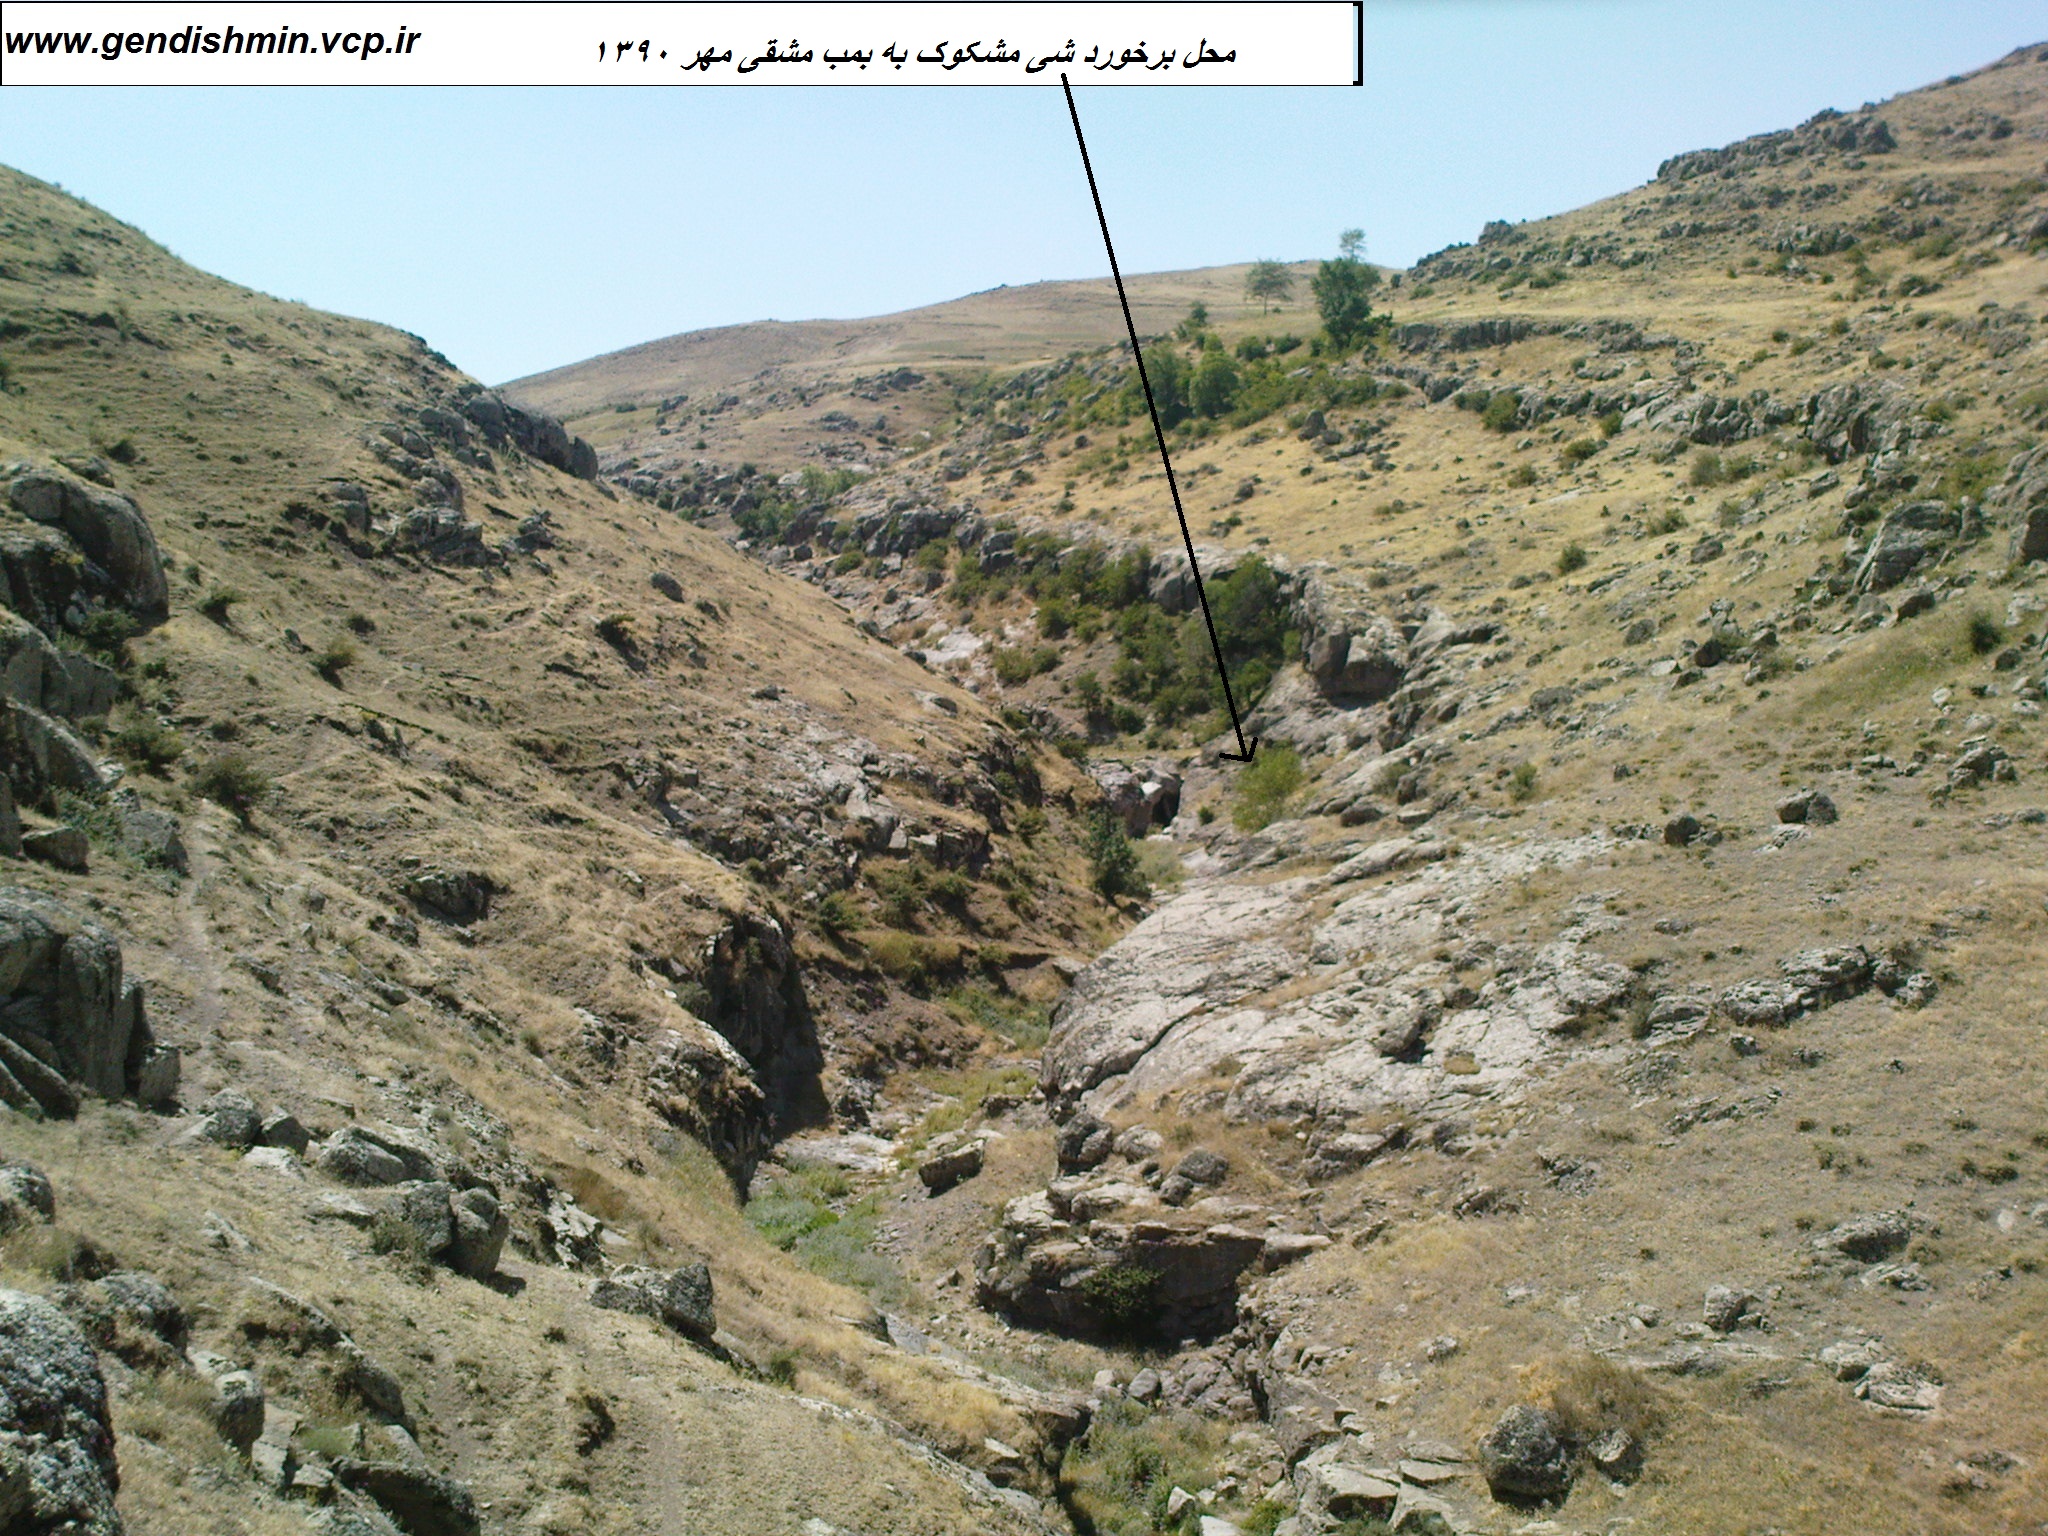 واکنش وب سایت روستای گندیشمین به خبر خبرگزاری مهر